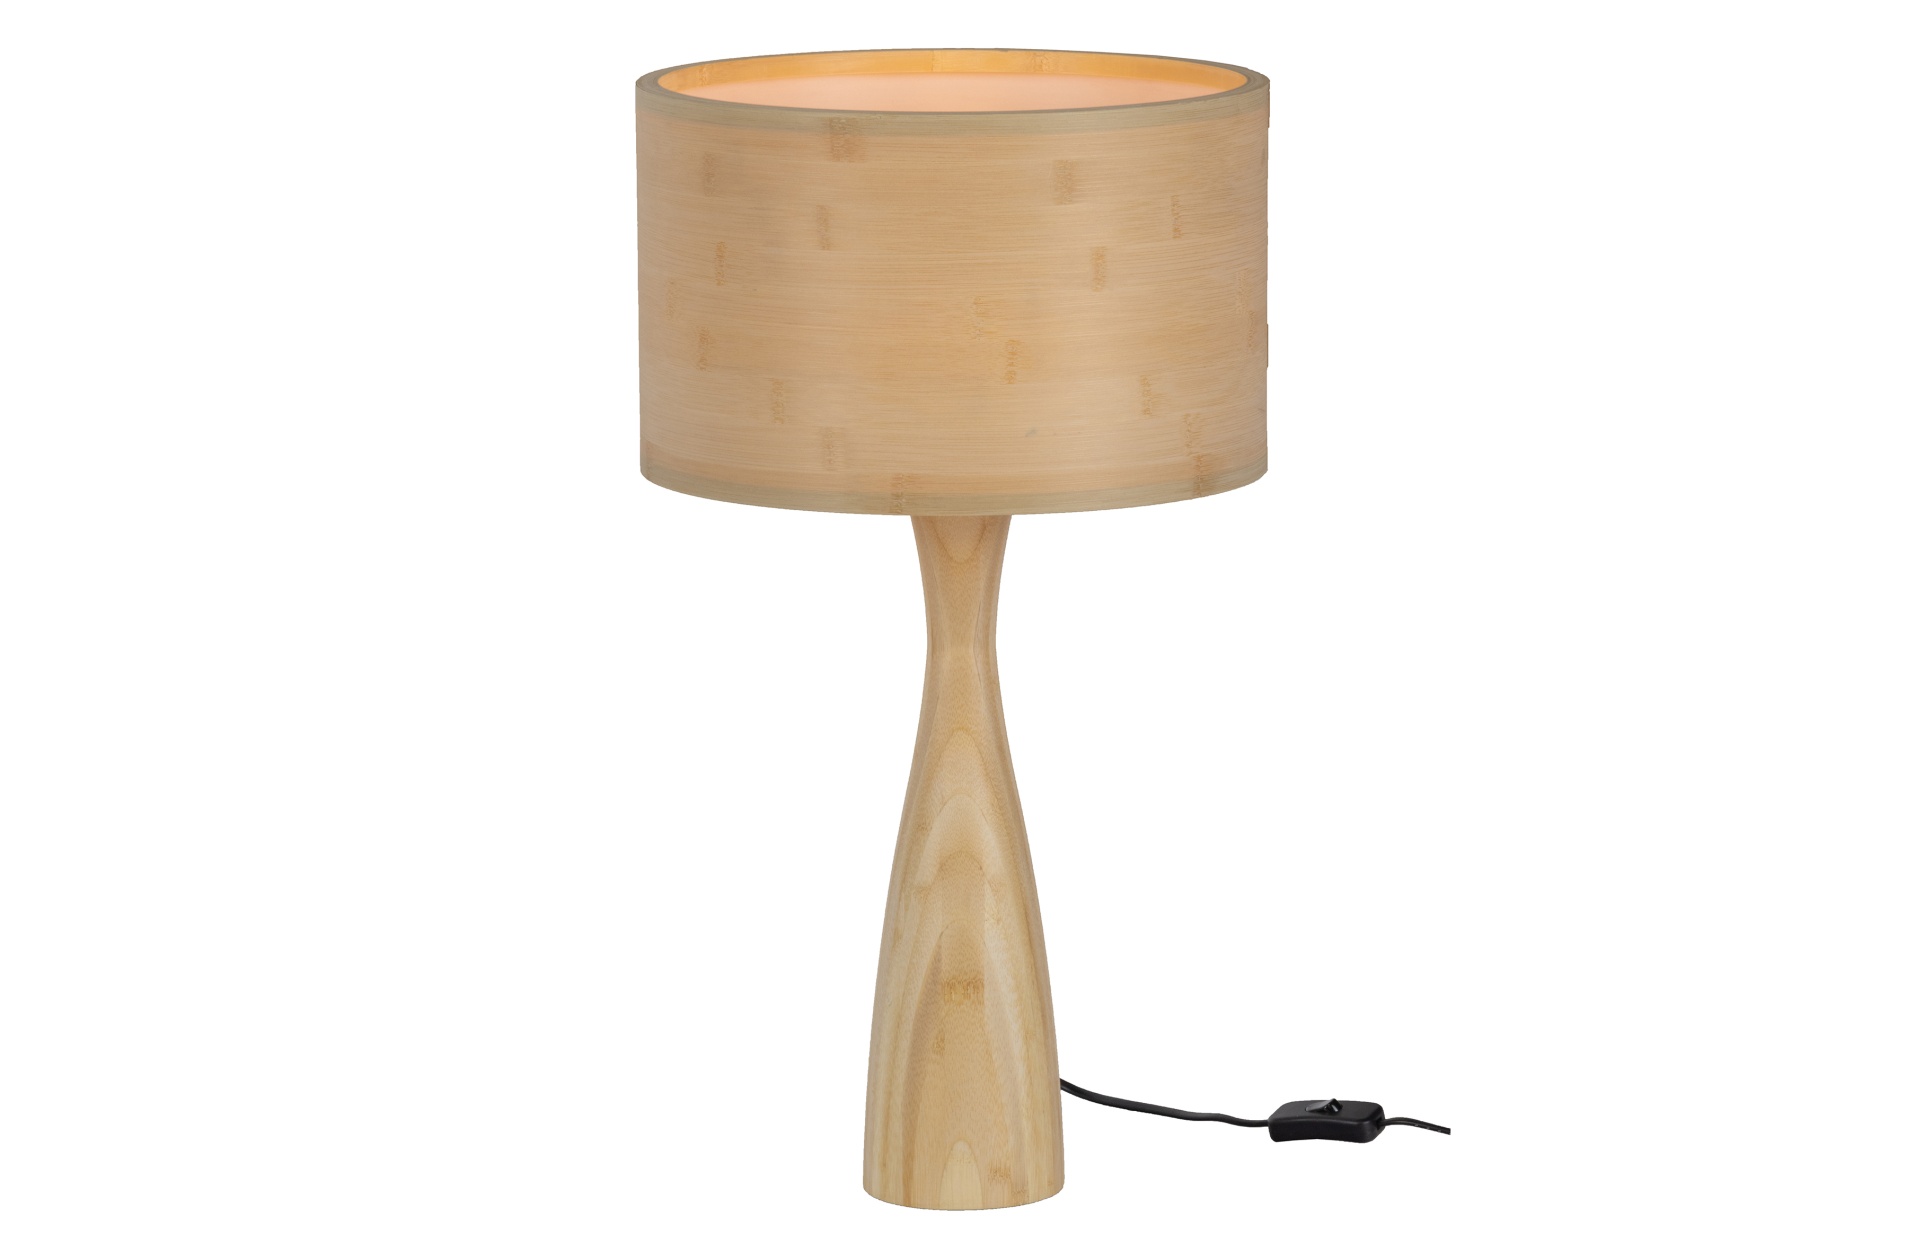 Die Tischlampe Lunar wurde aus Bambus Holz gefertigt, dadurch entsteht ein klassisches Design. Die Tischlampe benötigt eine  E27 Fassung mit maximal 40 Watt.